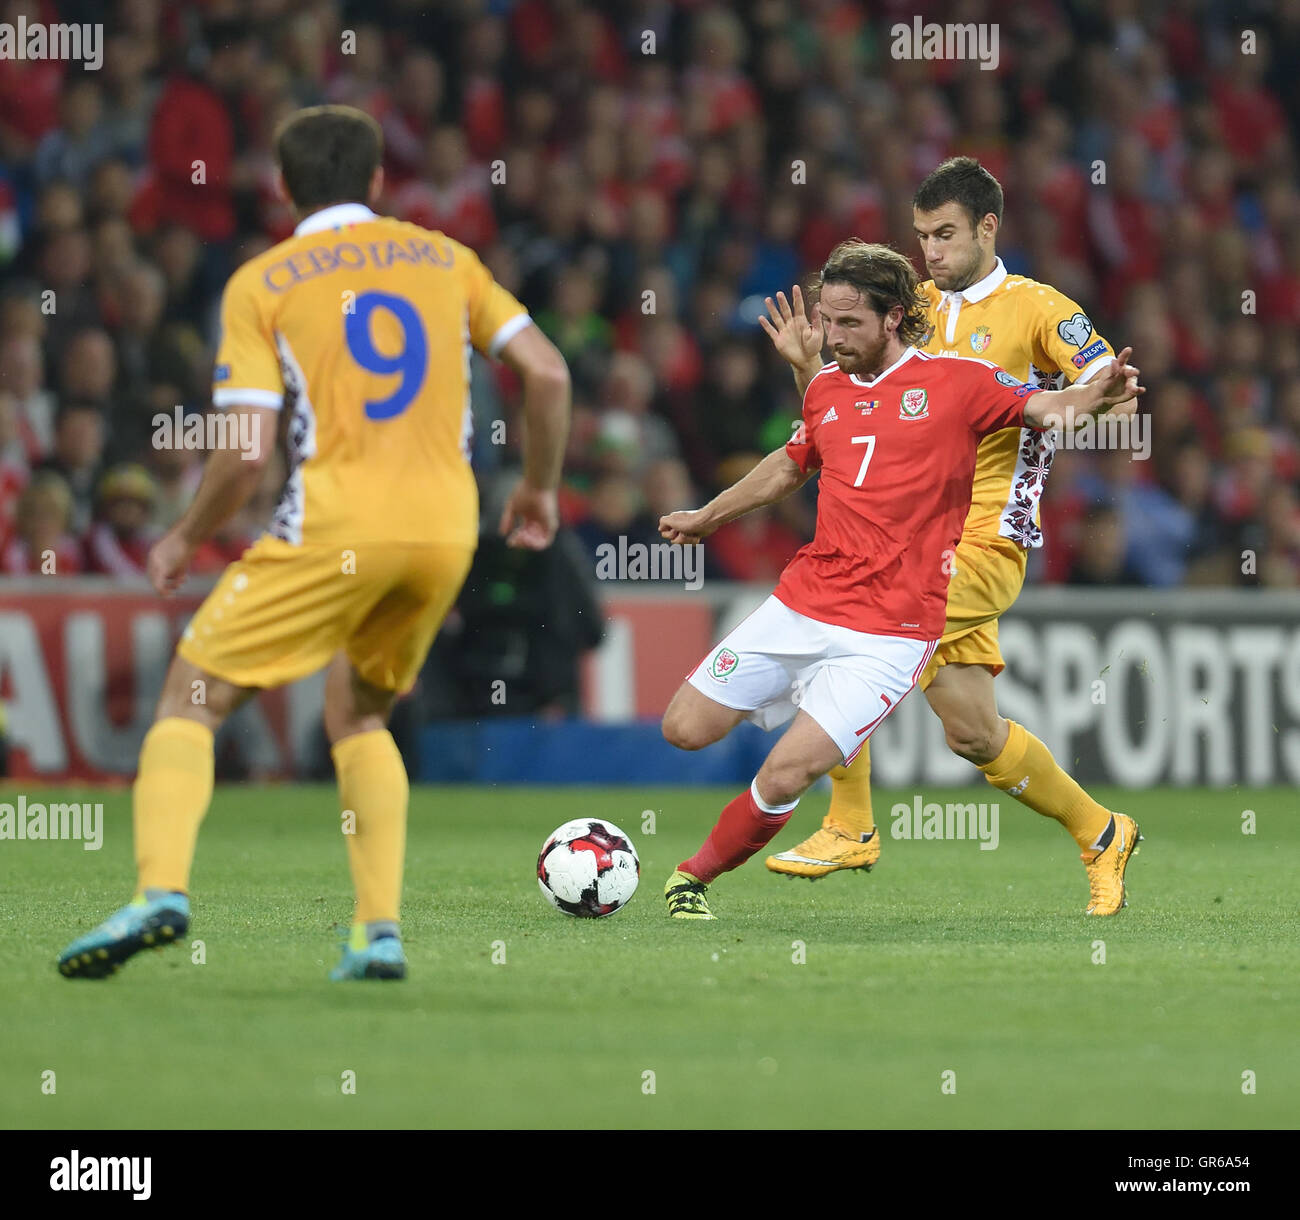 Coupe d'europe 2016 Banque de photographies et d'images à haute résolution  - Page 2 - Alamy